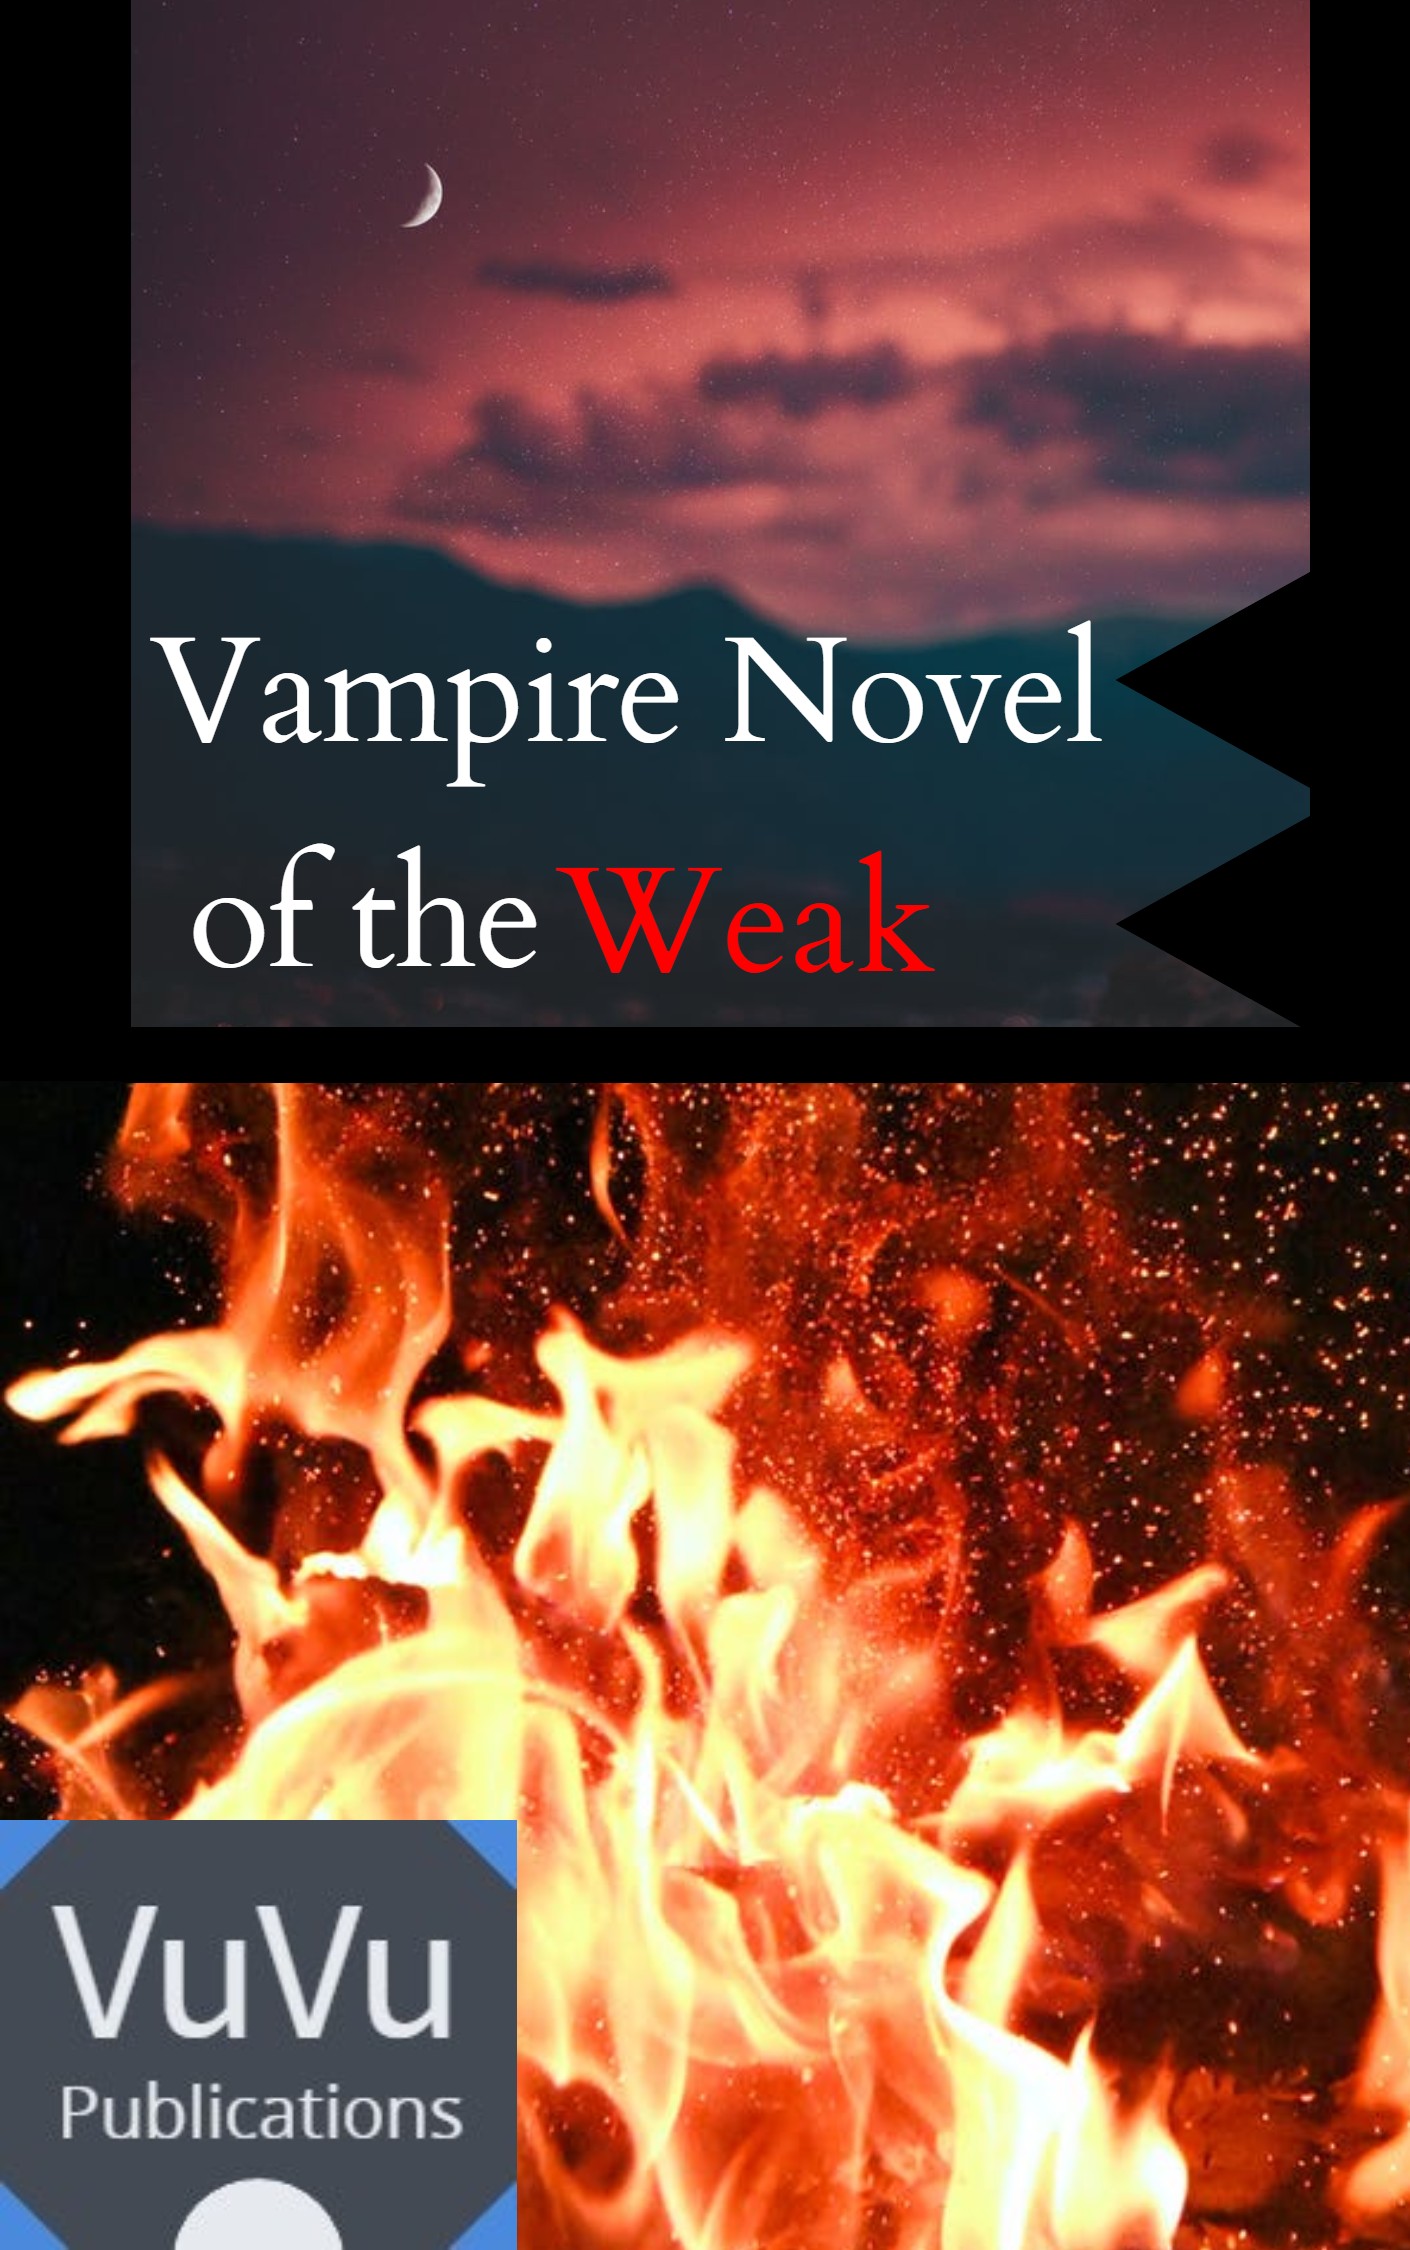 Vampire-Novel-of-the-Weak-1